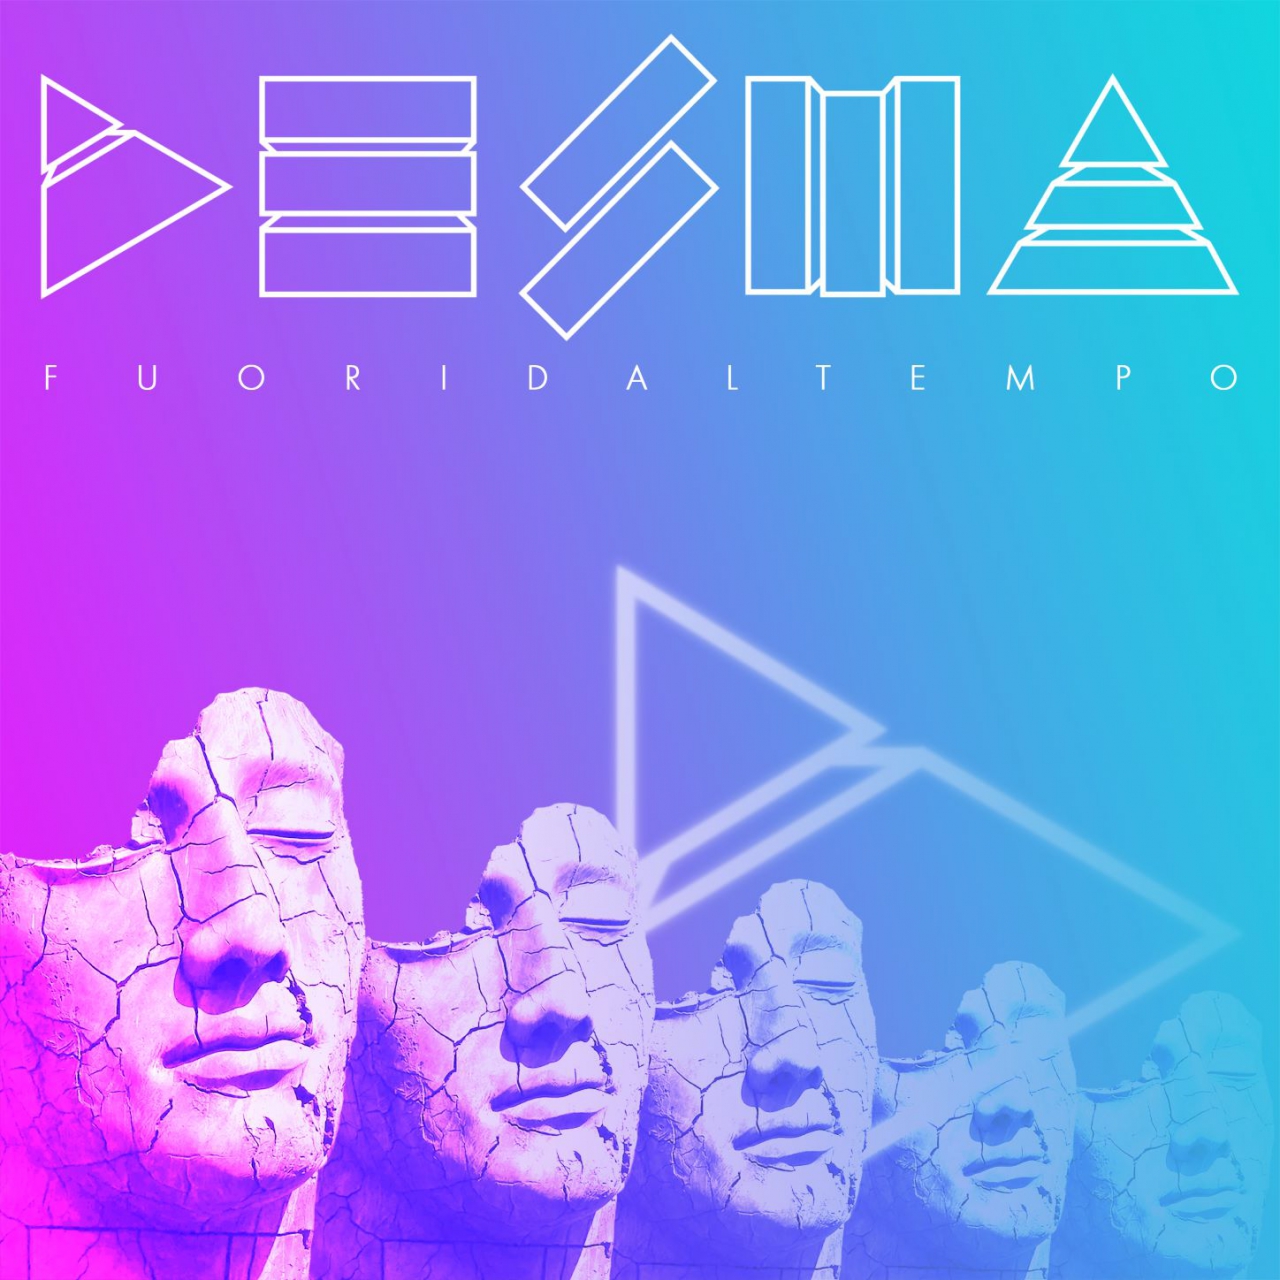 DESMA - Il nuovo singolo “Fuori dal tempo”